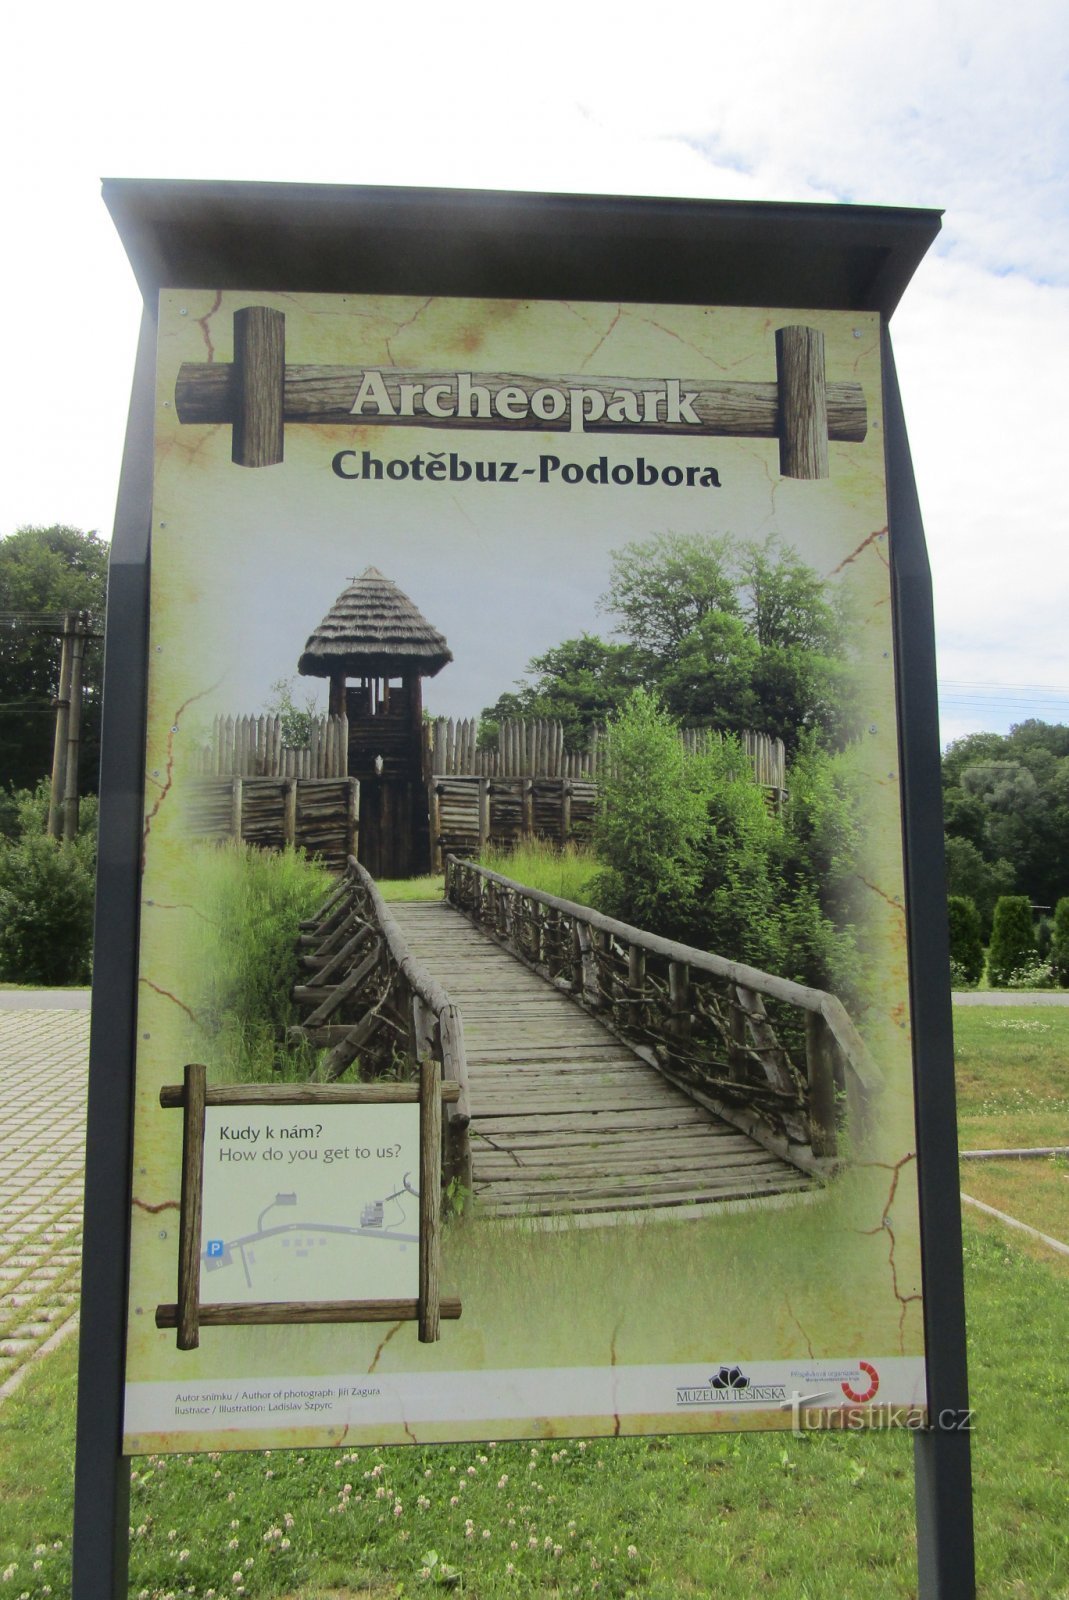 Archeopark Chotěbuza-Podoborban